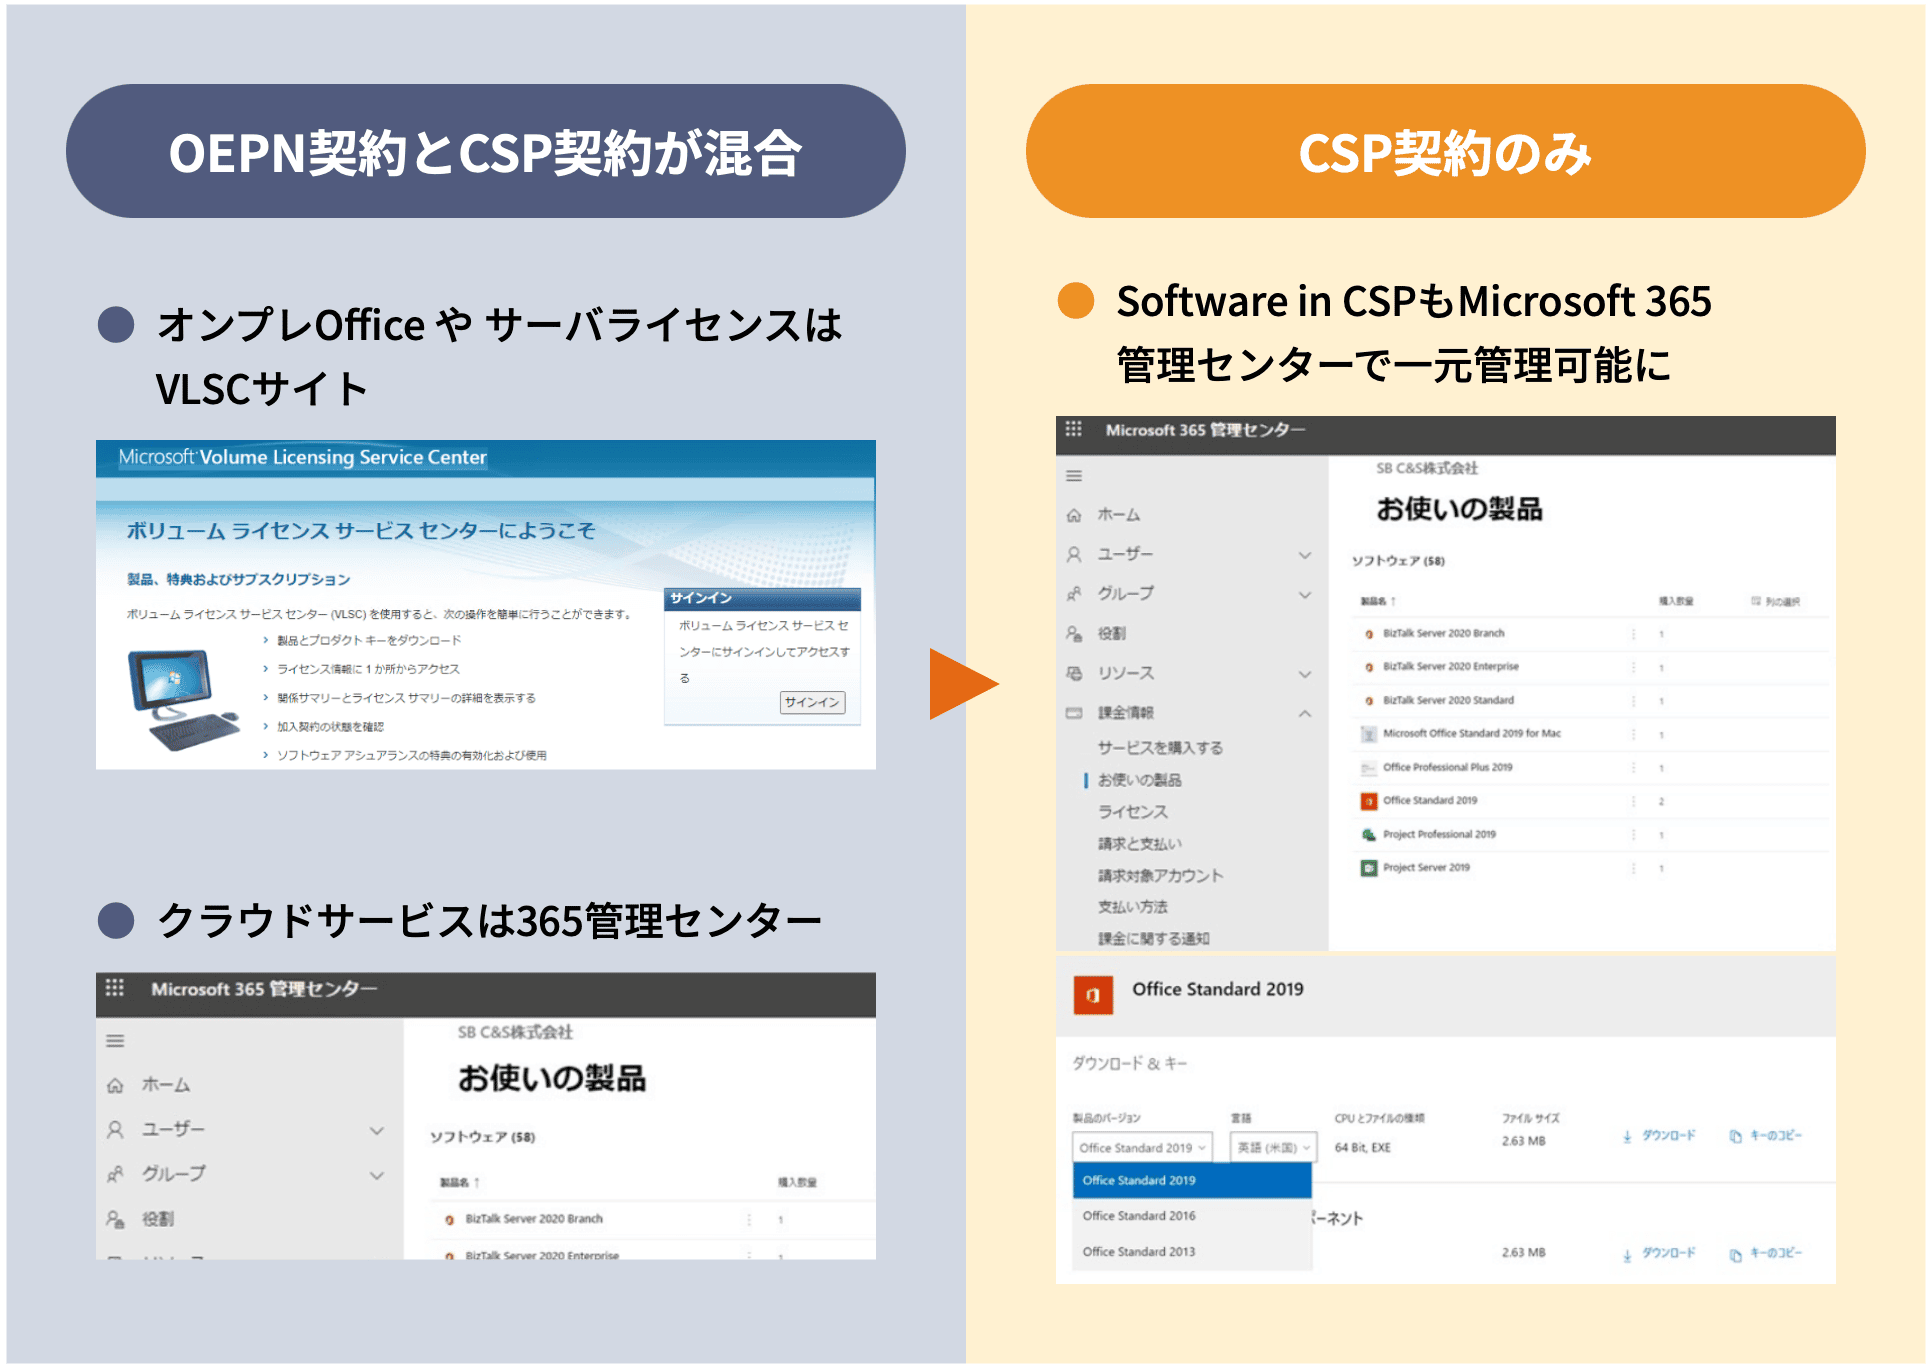 24775円 メーカー在庫限り品 日本マイクロソフト G3S-01393 Windows Server Essentials Single Language License Software Assurance Pack Open Value Charity 一括購入